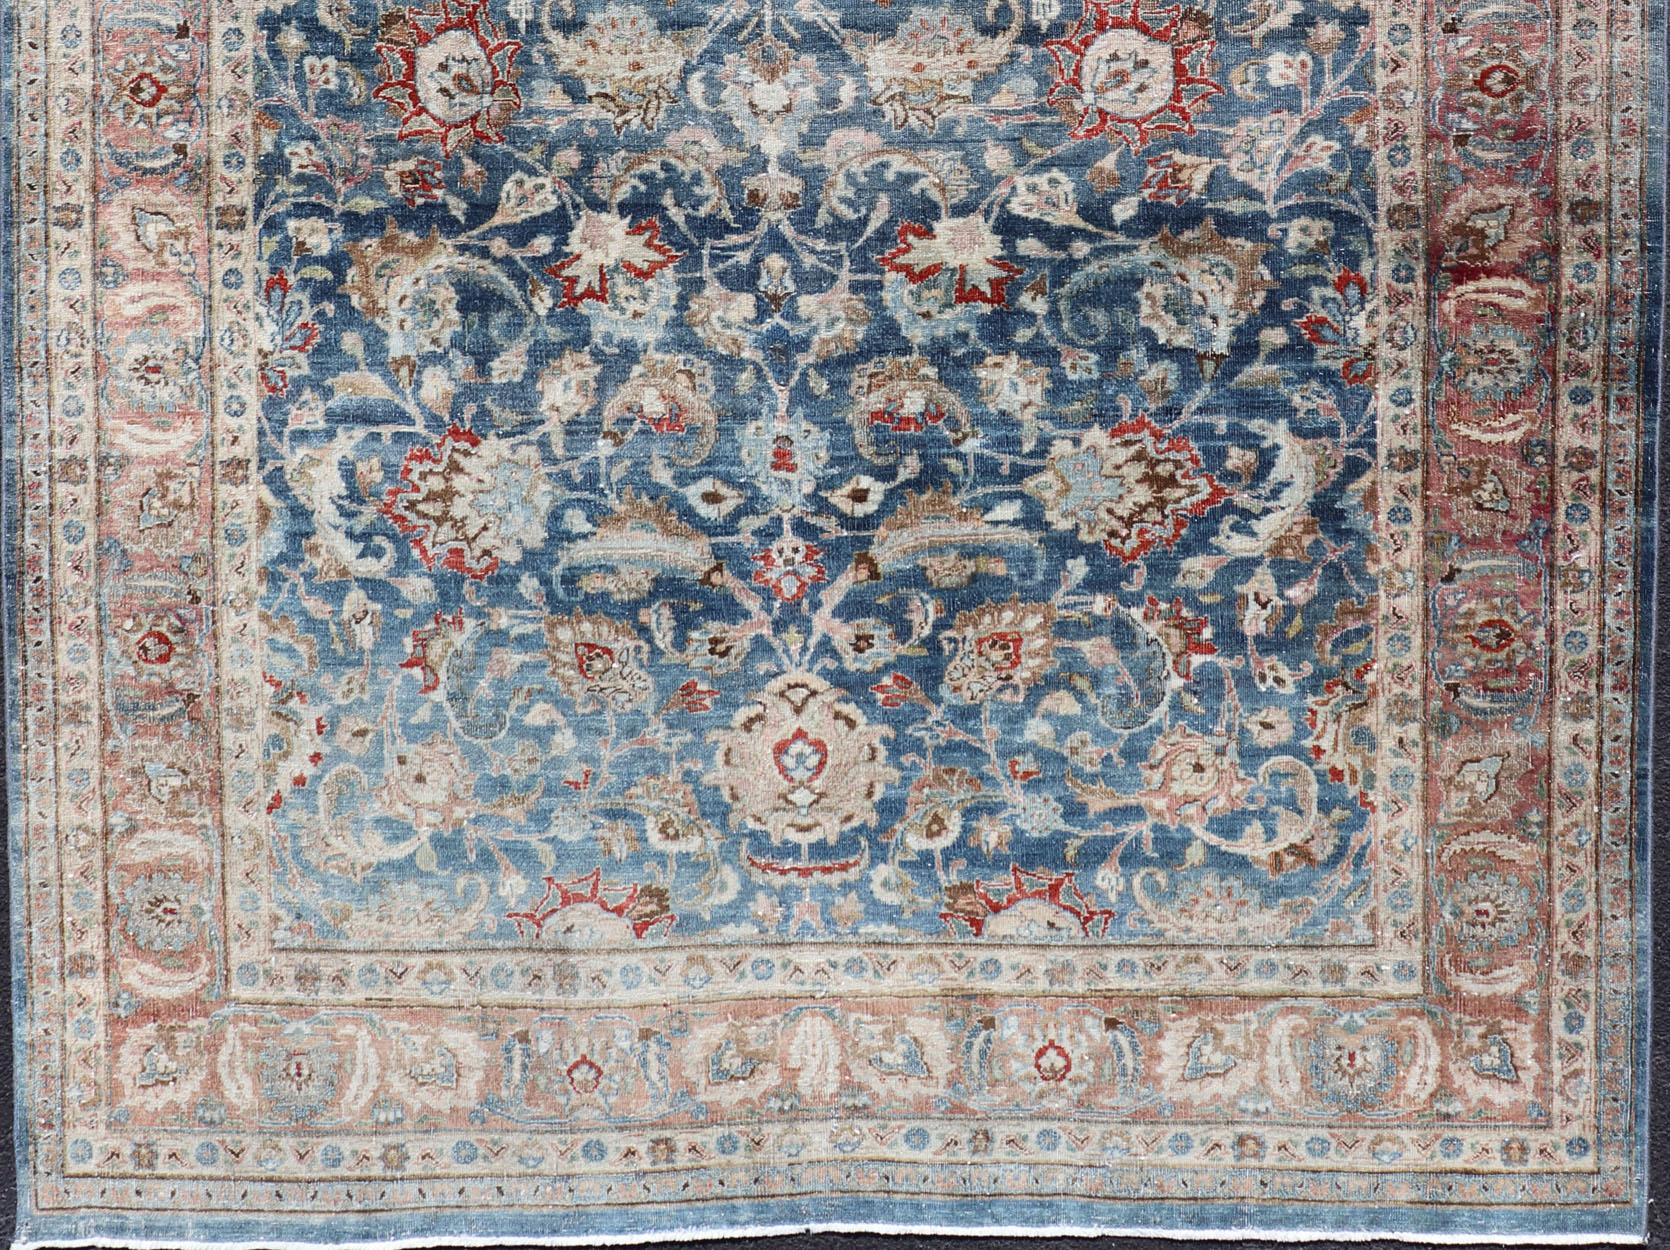 Antiker persischer Mashad-Teppich mit blauem Hintergrund und hellrosa Bordüre. Vorleger / R20-0824
Mashad ist eine Großstadt im Nordosten Irans in der Provinz Khorossan. Dieser antike Mashhad-Teppich zeigt ein botanisches Allover-Muster mit